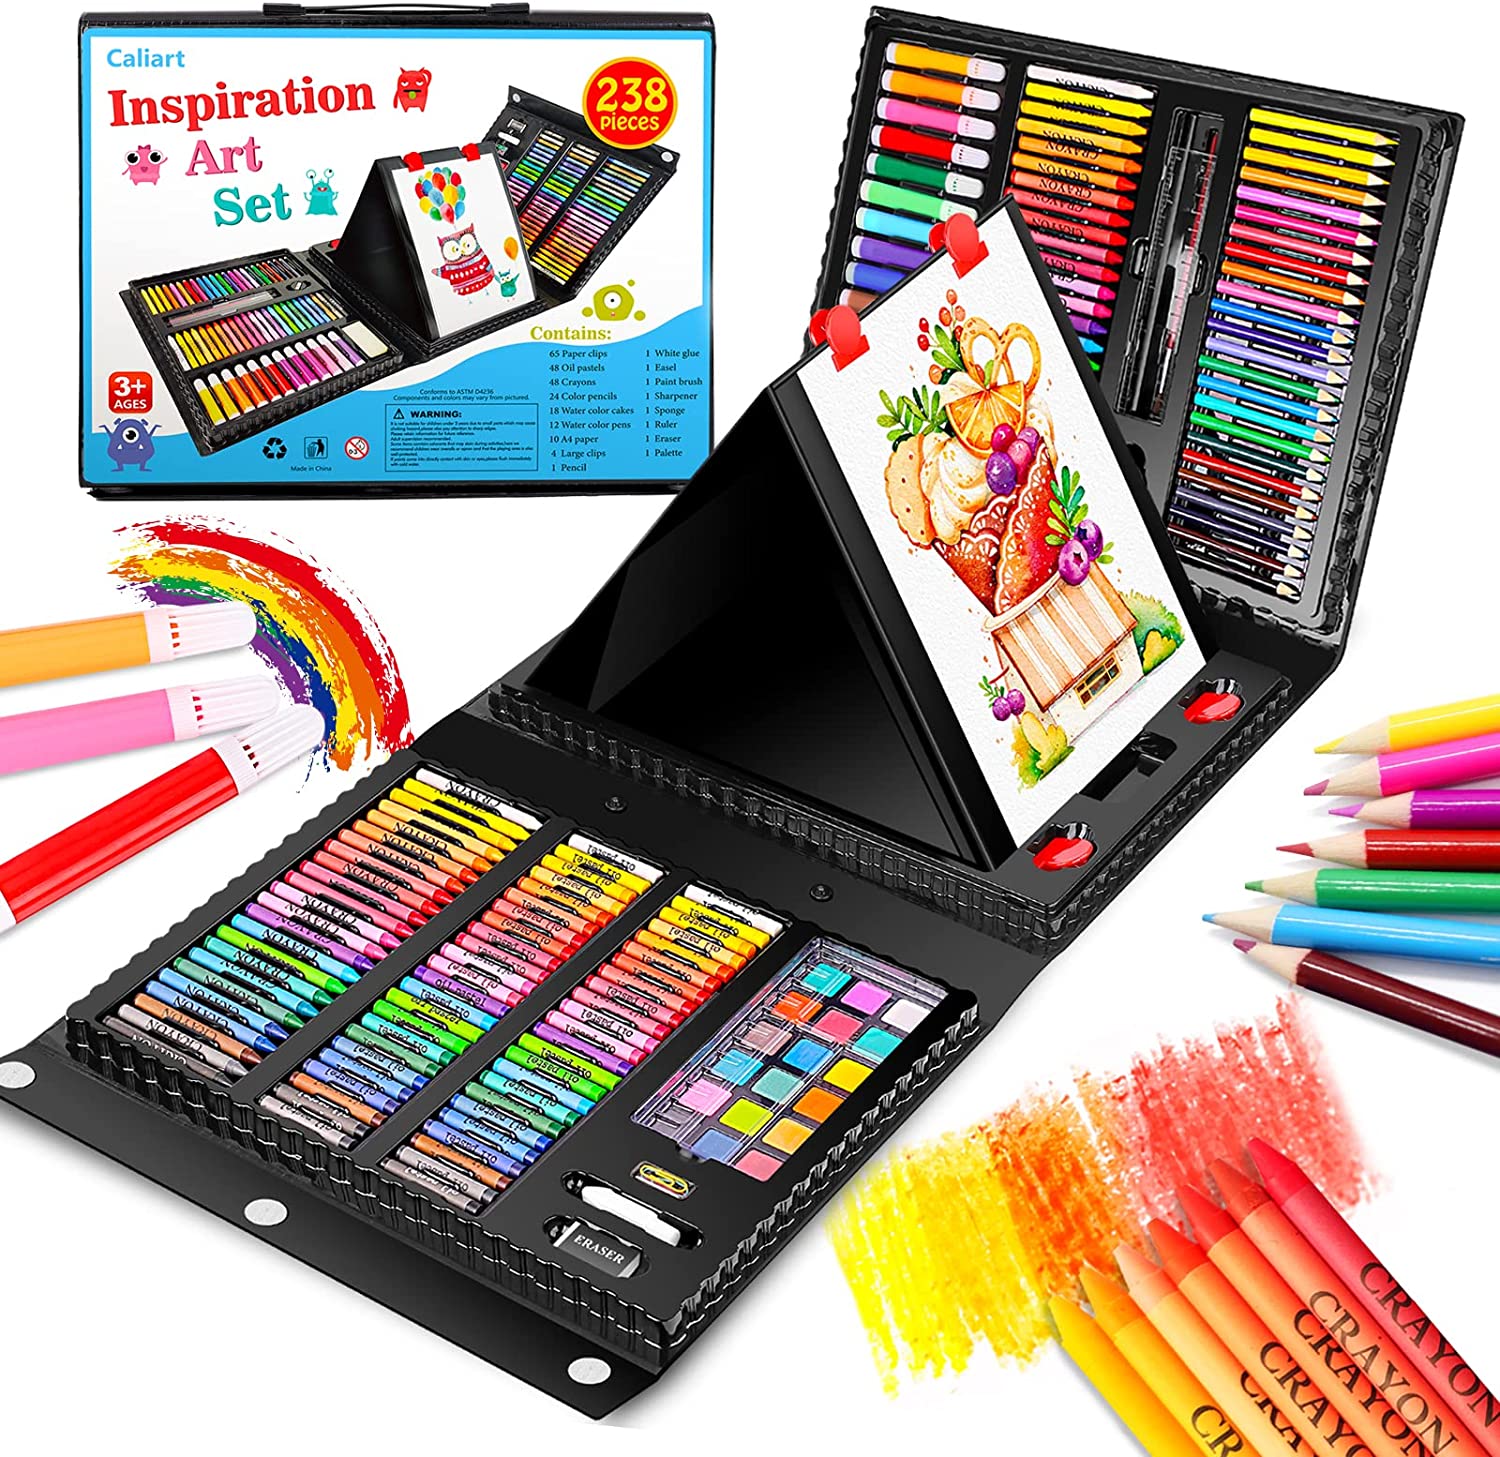 YBLANDEG Drawing and Sketching Colored Pencils Kit 145PCS